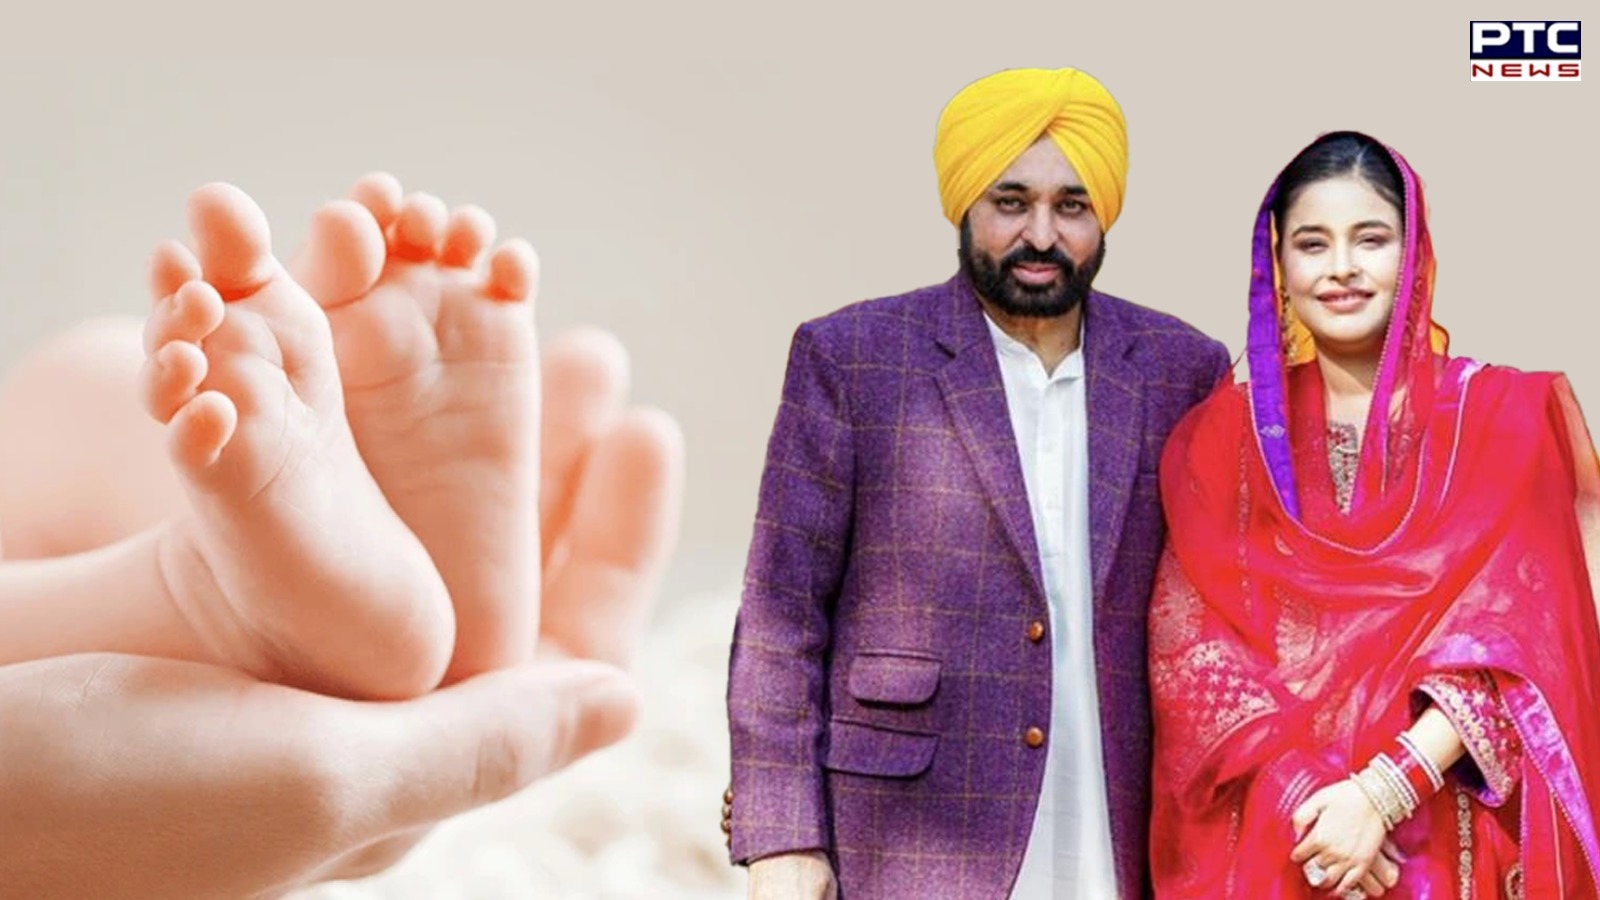 Punjab News: भगवंत मान फिर बने पिता, पत्नी गुरप्रीत कौर ने दिया बेटी को जन्म